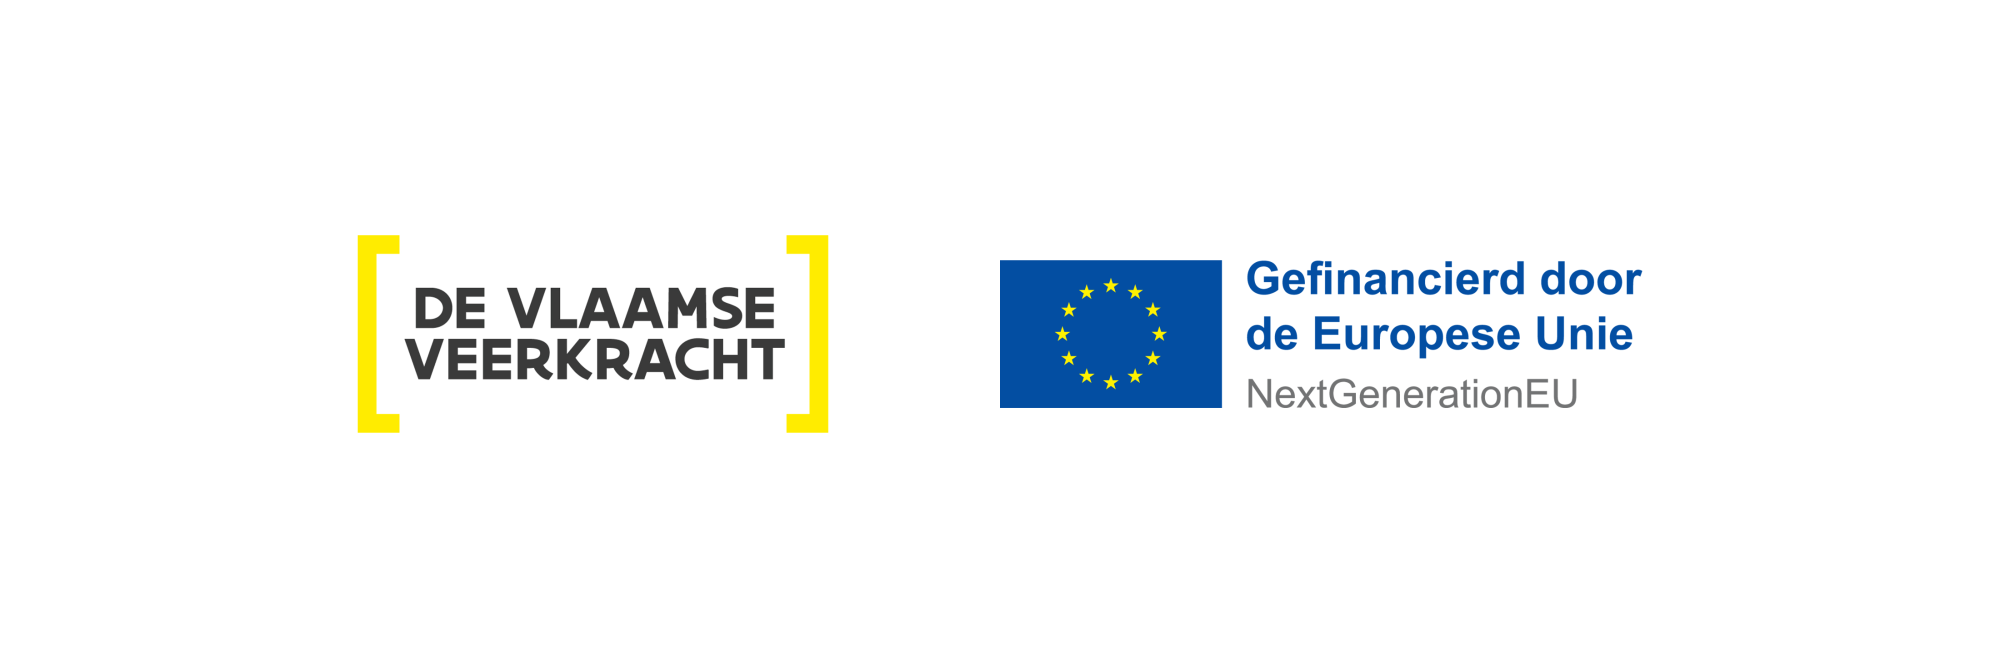 Project met steun van GzG, Vlaamse Veerkracht en NextGenerationEU